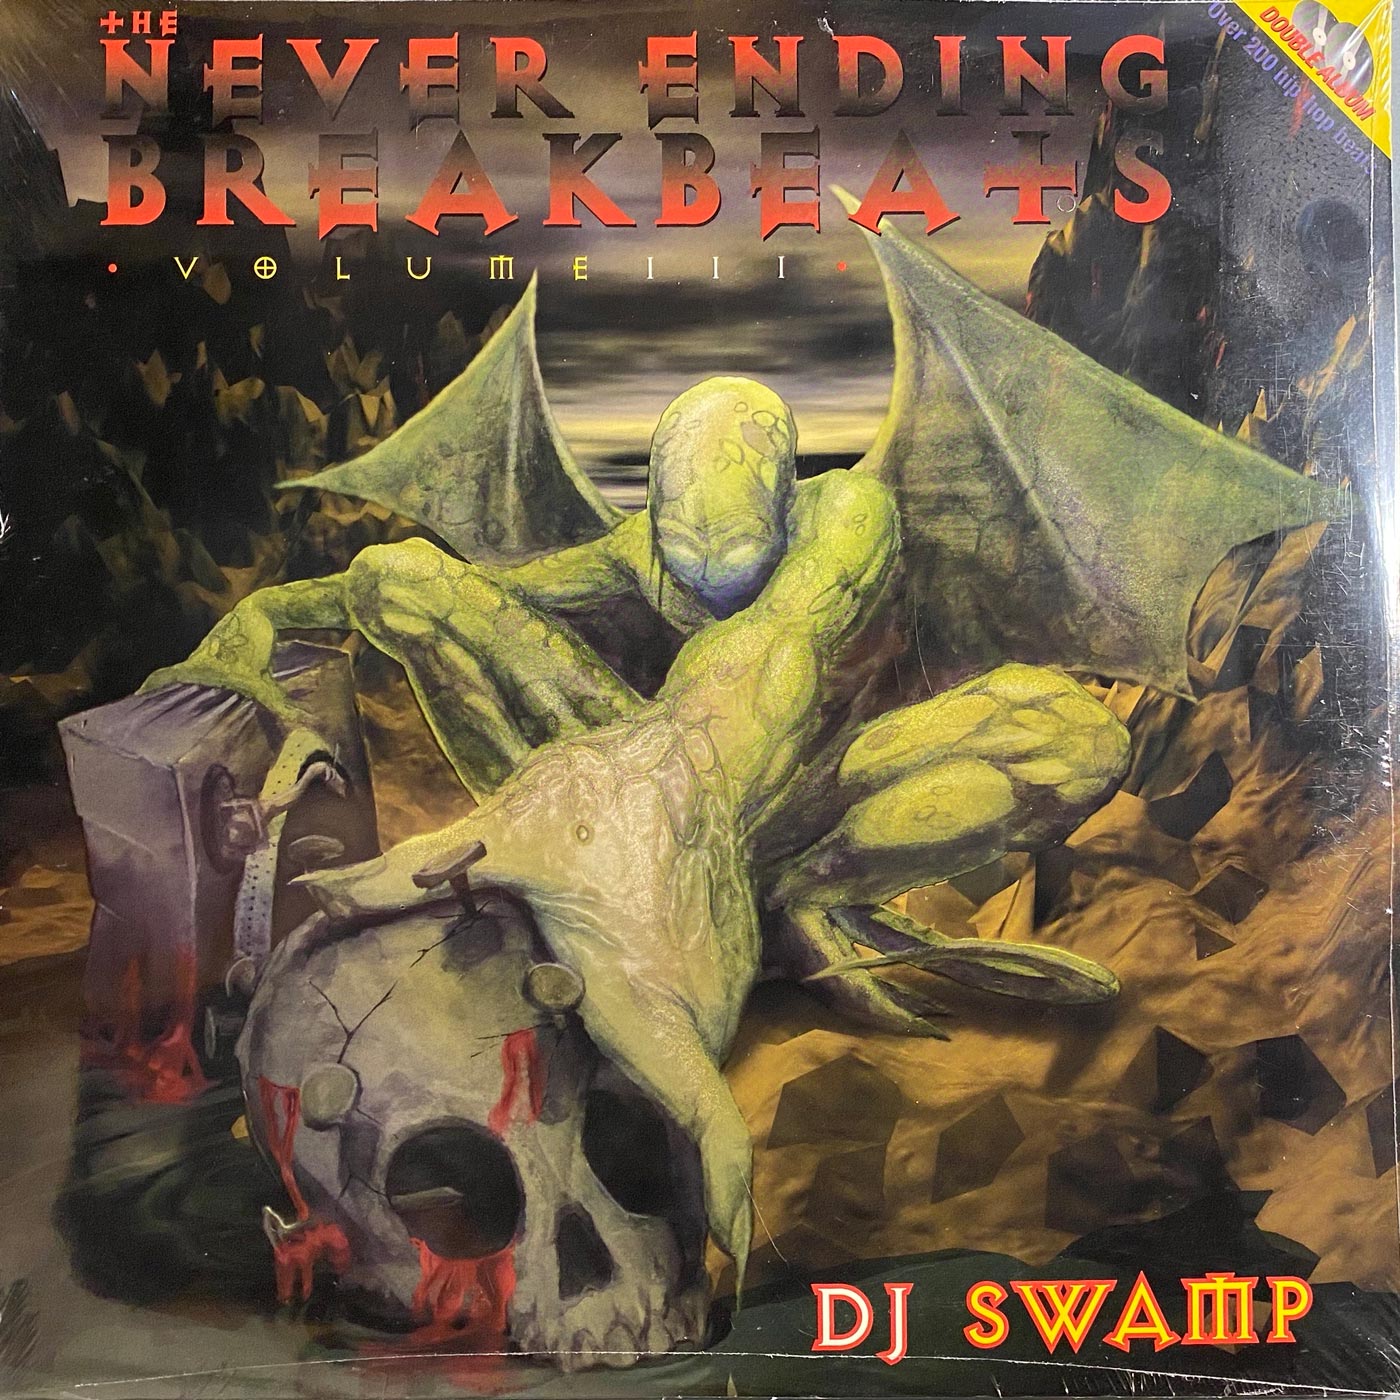 DJ Swamp - Never Ending Breakbeats Vol. III